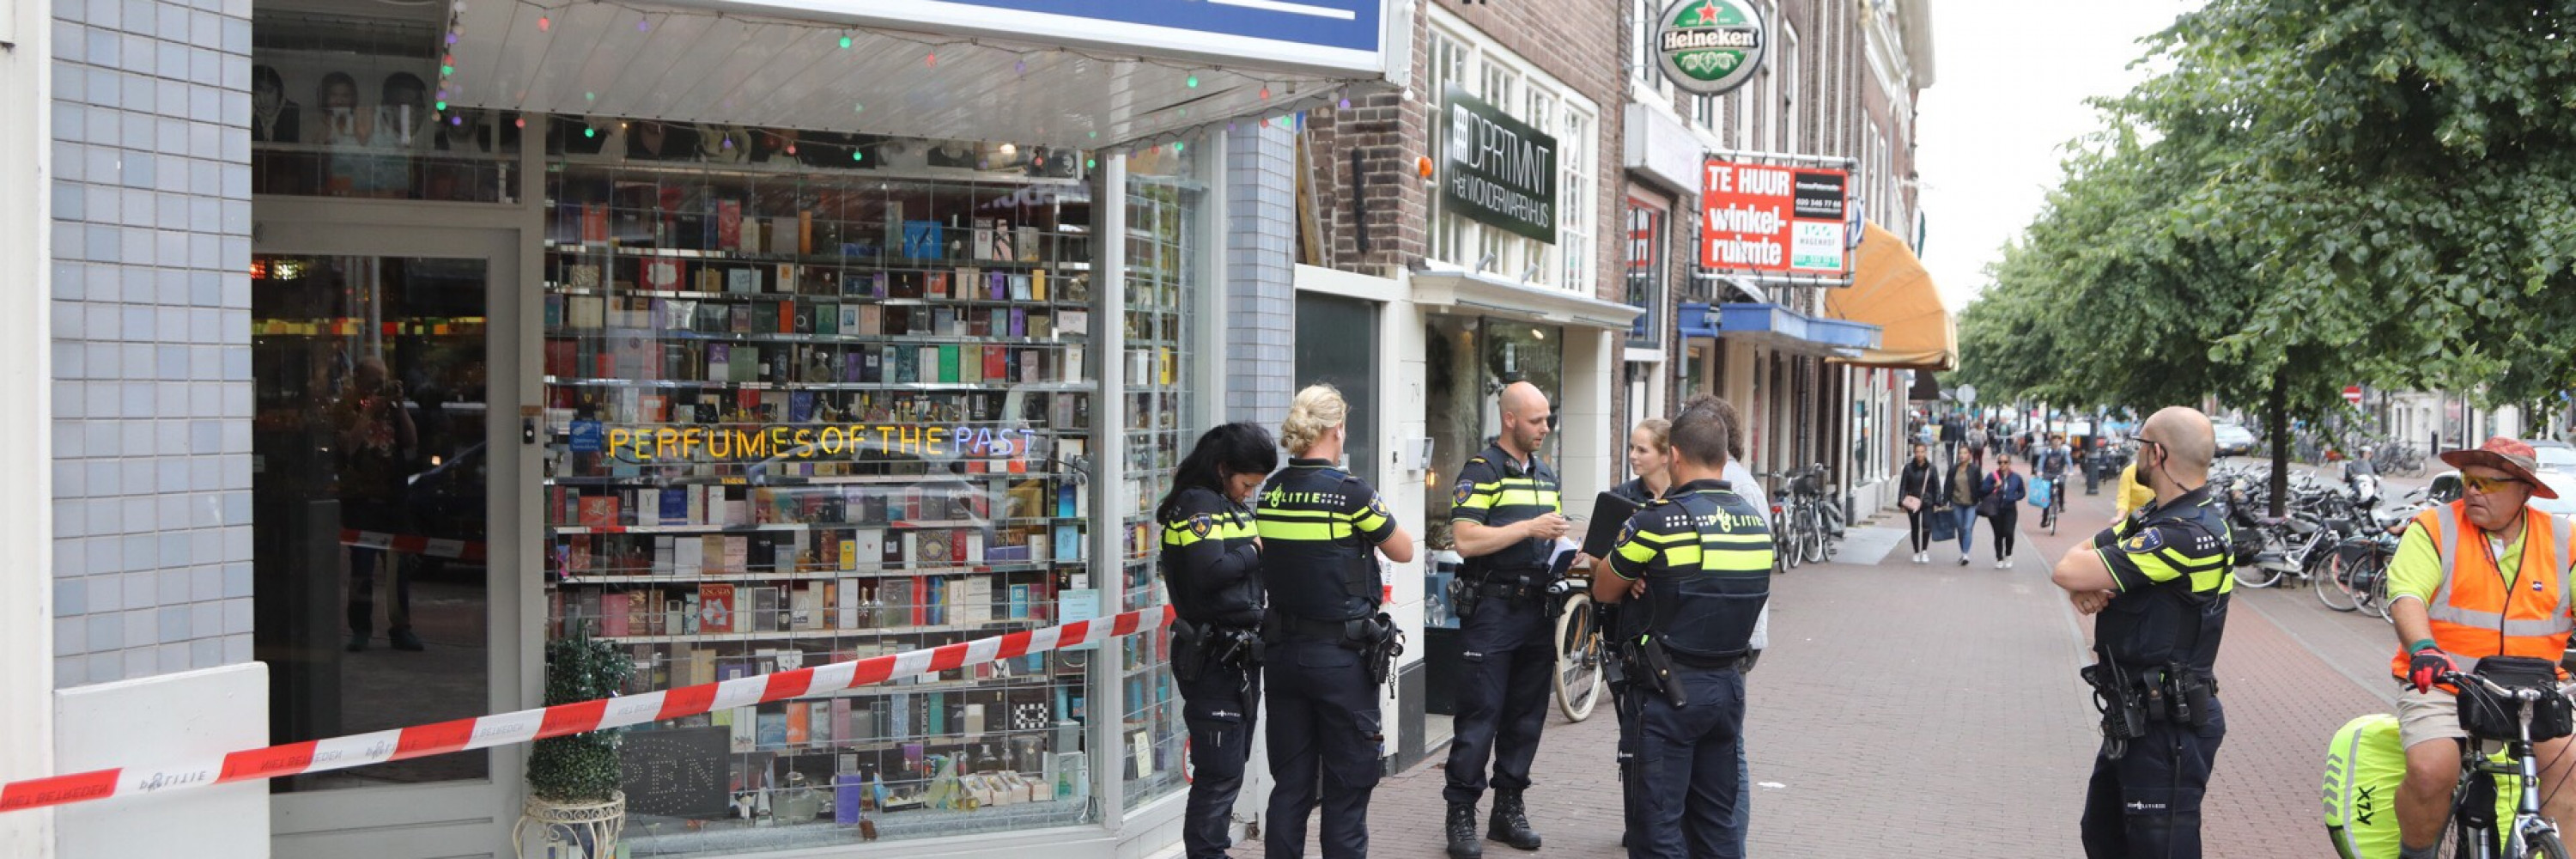 goedkeuren bedriegen Ruwe olie Twee mannen overvallen Haarlemse parfumzaak, eigenaar gewond - NH Nieuws